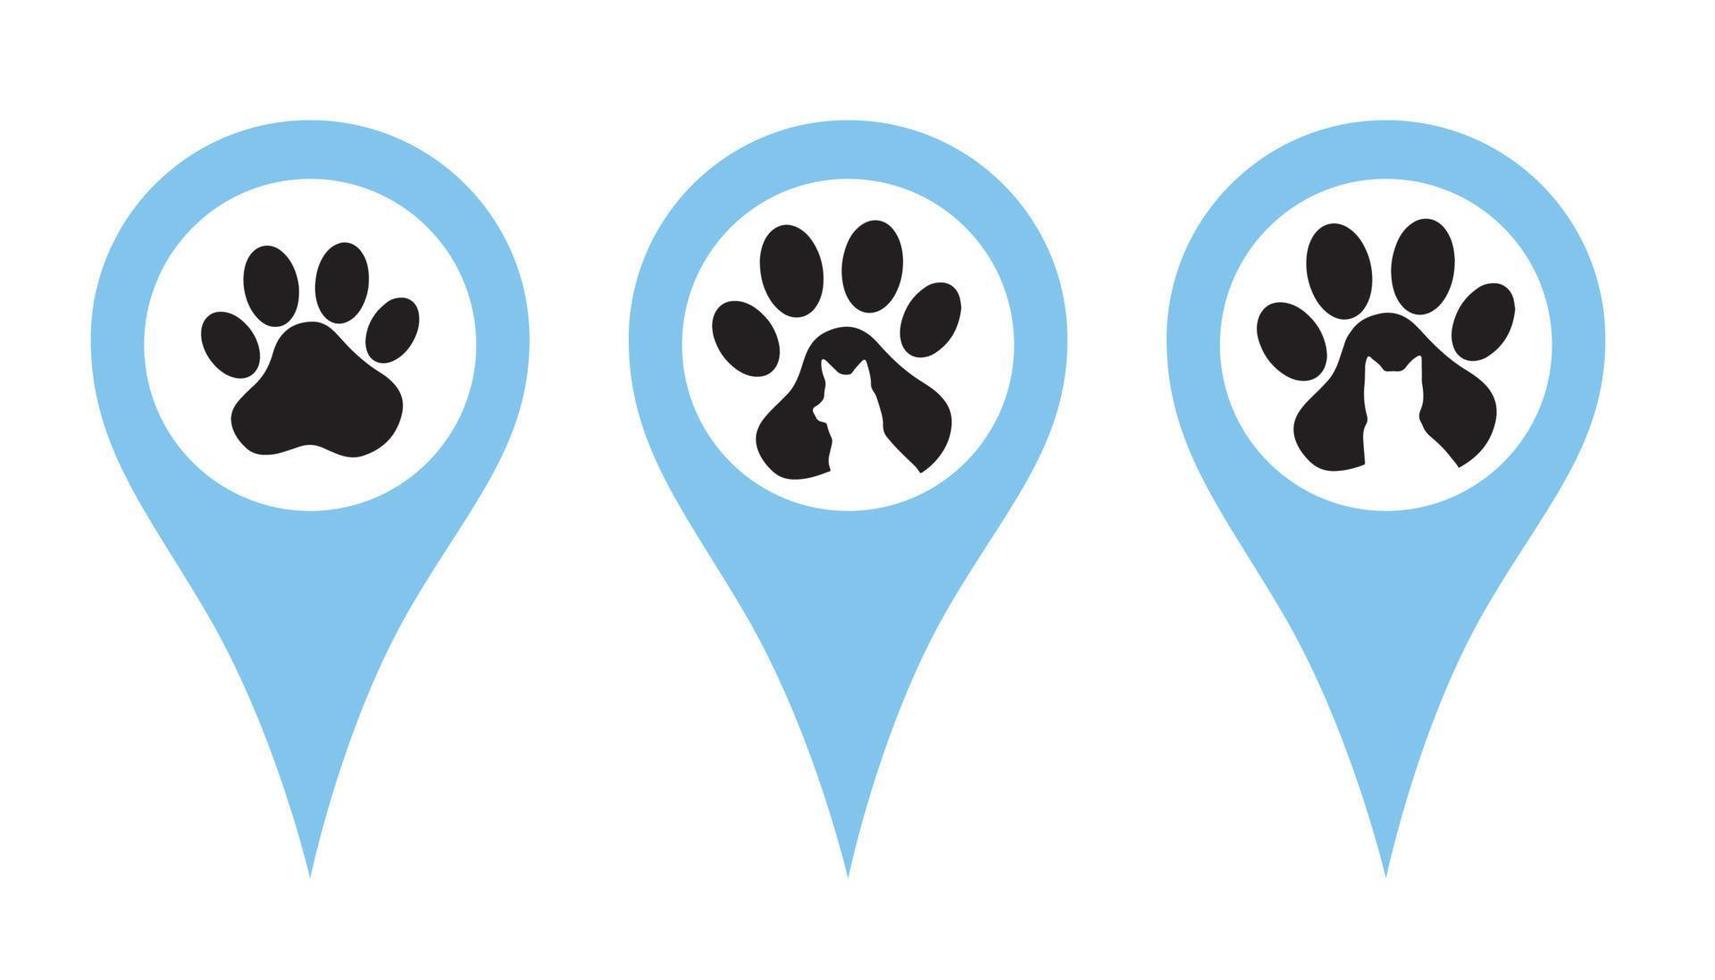 conjunto de pinos de localização. pinos indicando a localização de uma clínica veterinária, loja de animais, centro de cuidados com animais. crachás com pegadas, uma silhueta de um cachorro e um gato. ilustração vetorial em um estilo simples. vetor